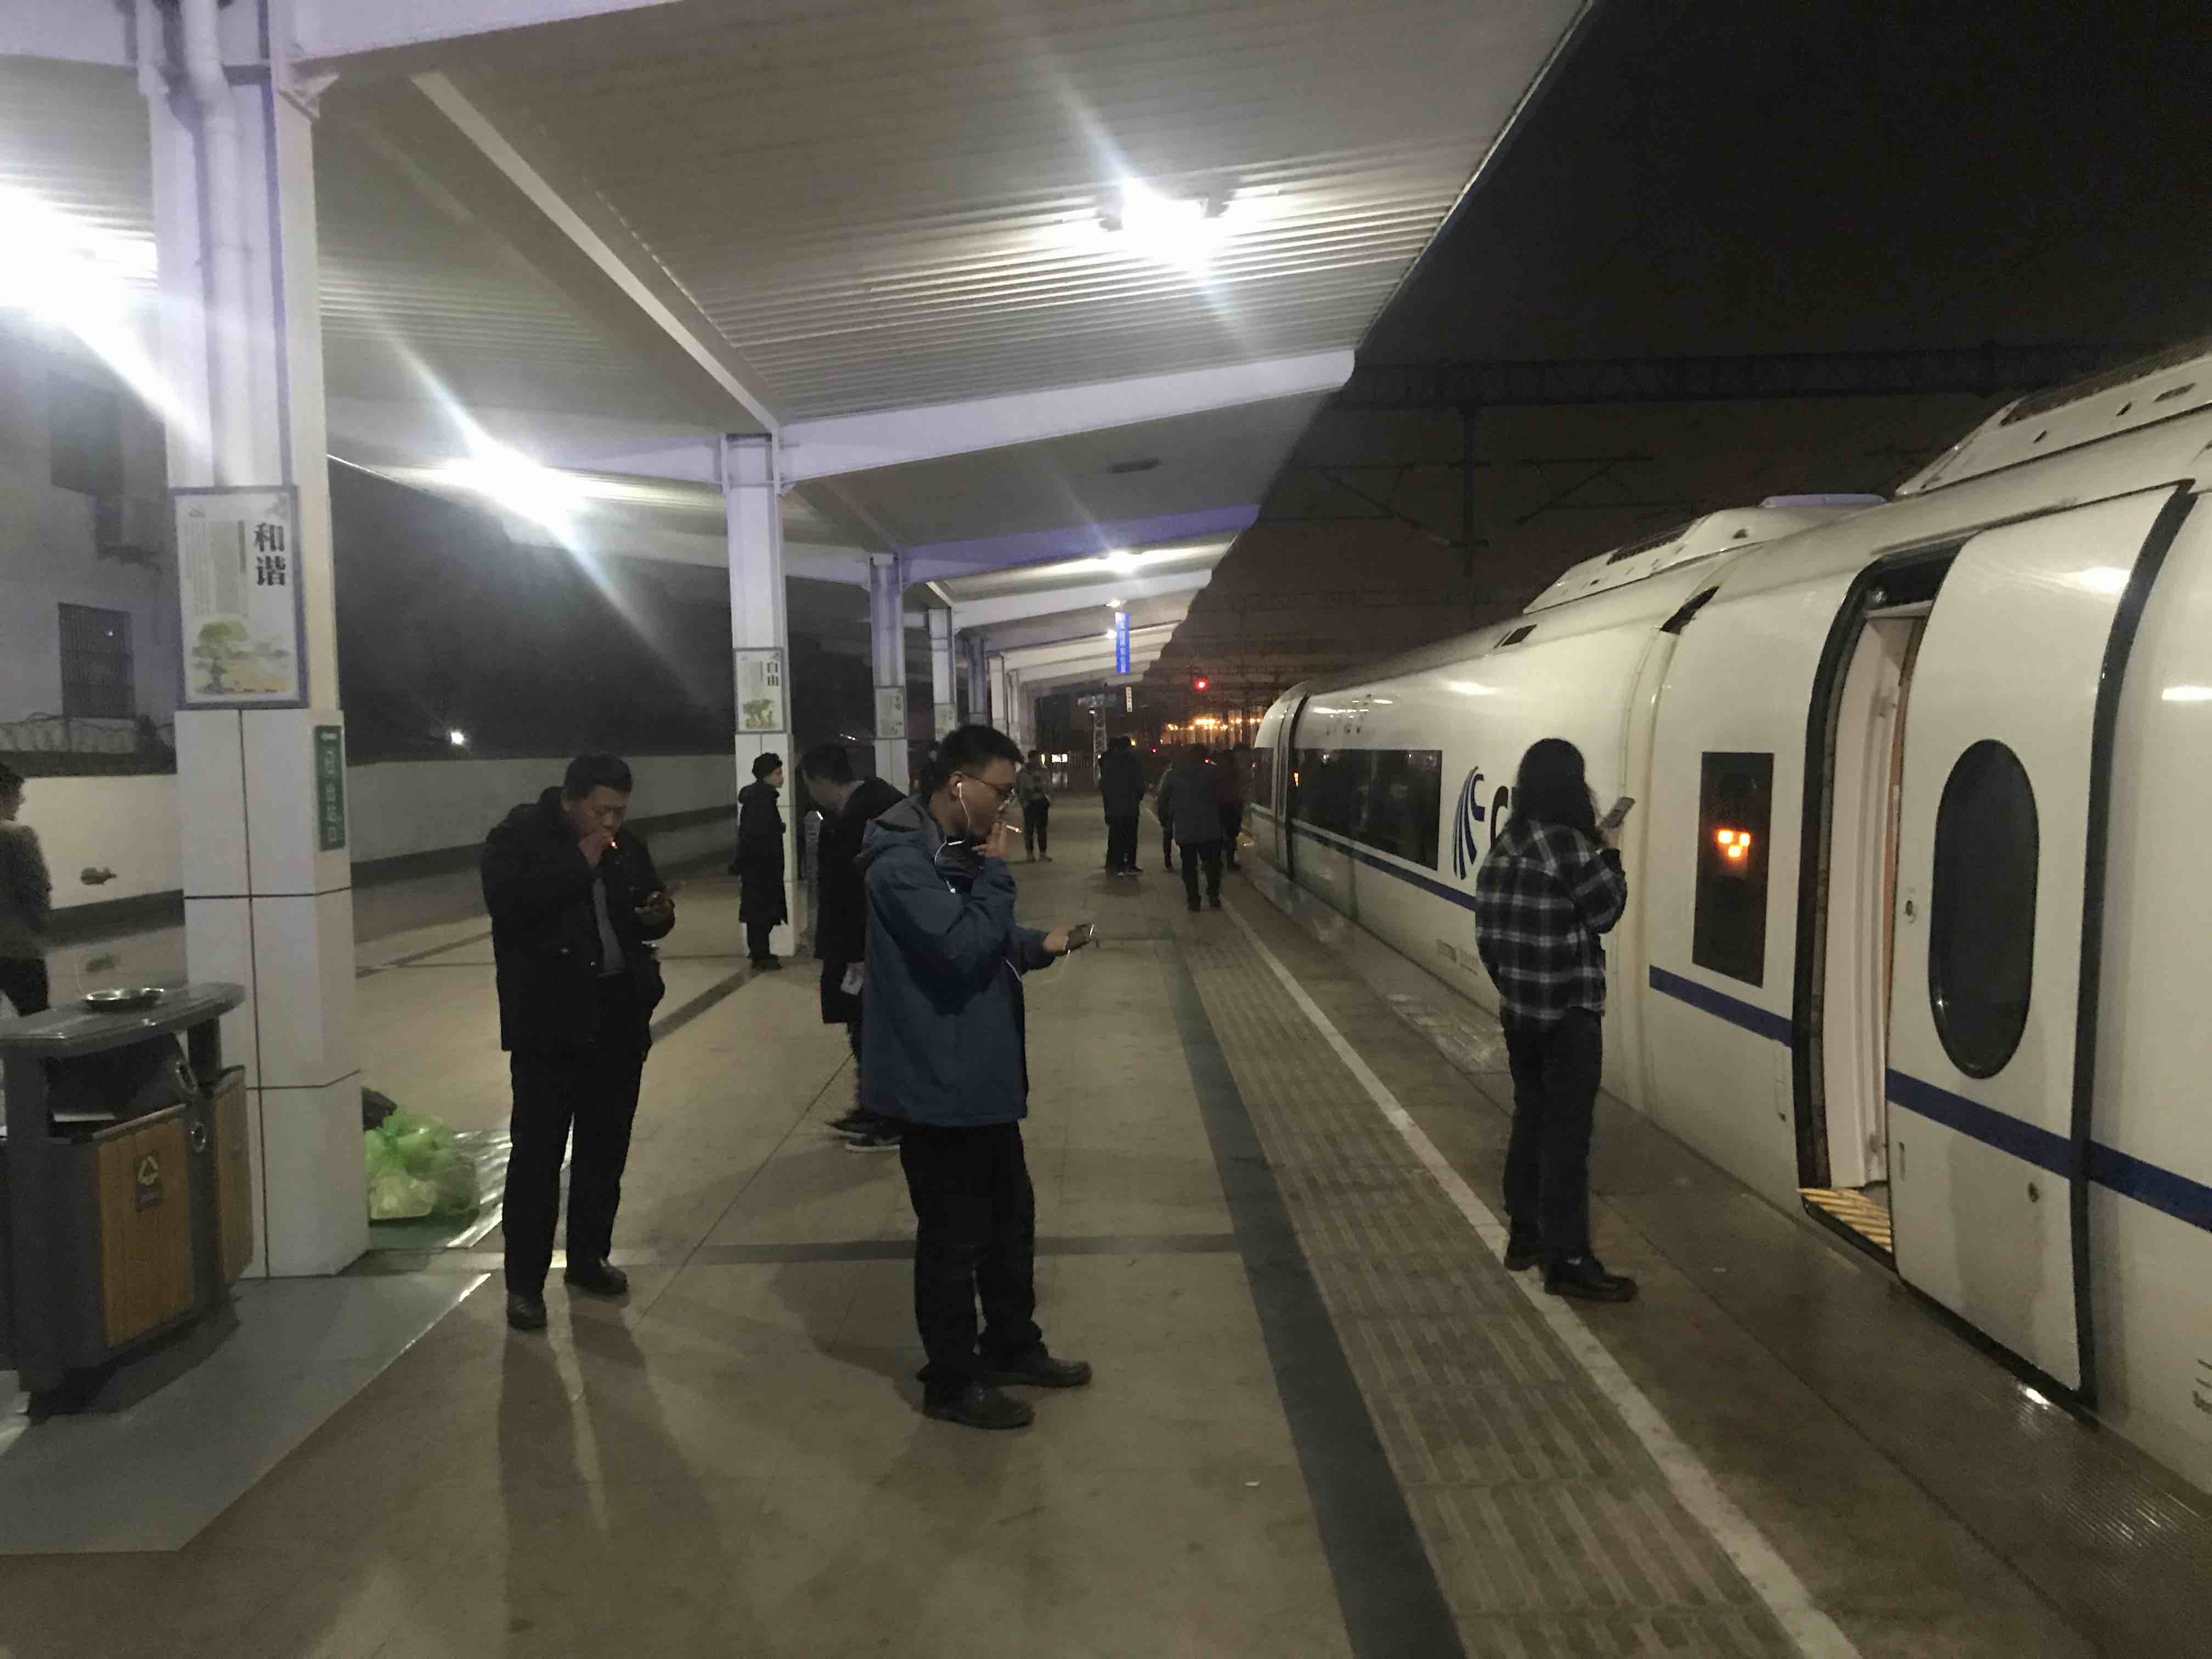 胶济客专青州站设备故障，青岛方向高铁车辆晚点两小时